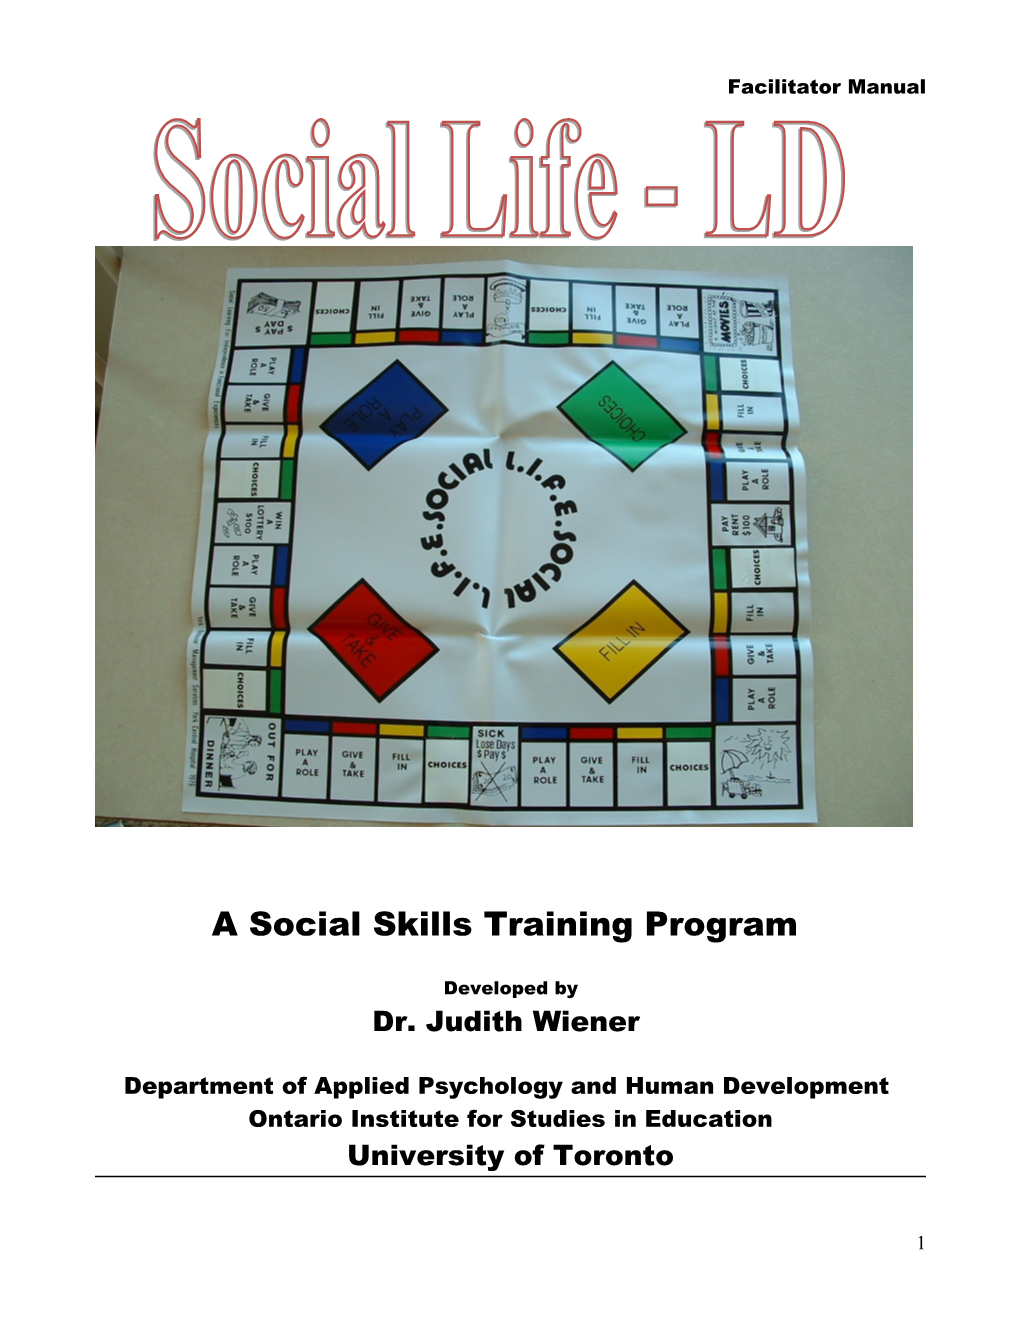 A Social Skills Training Program